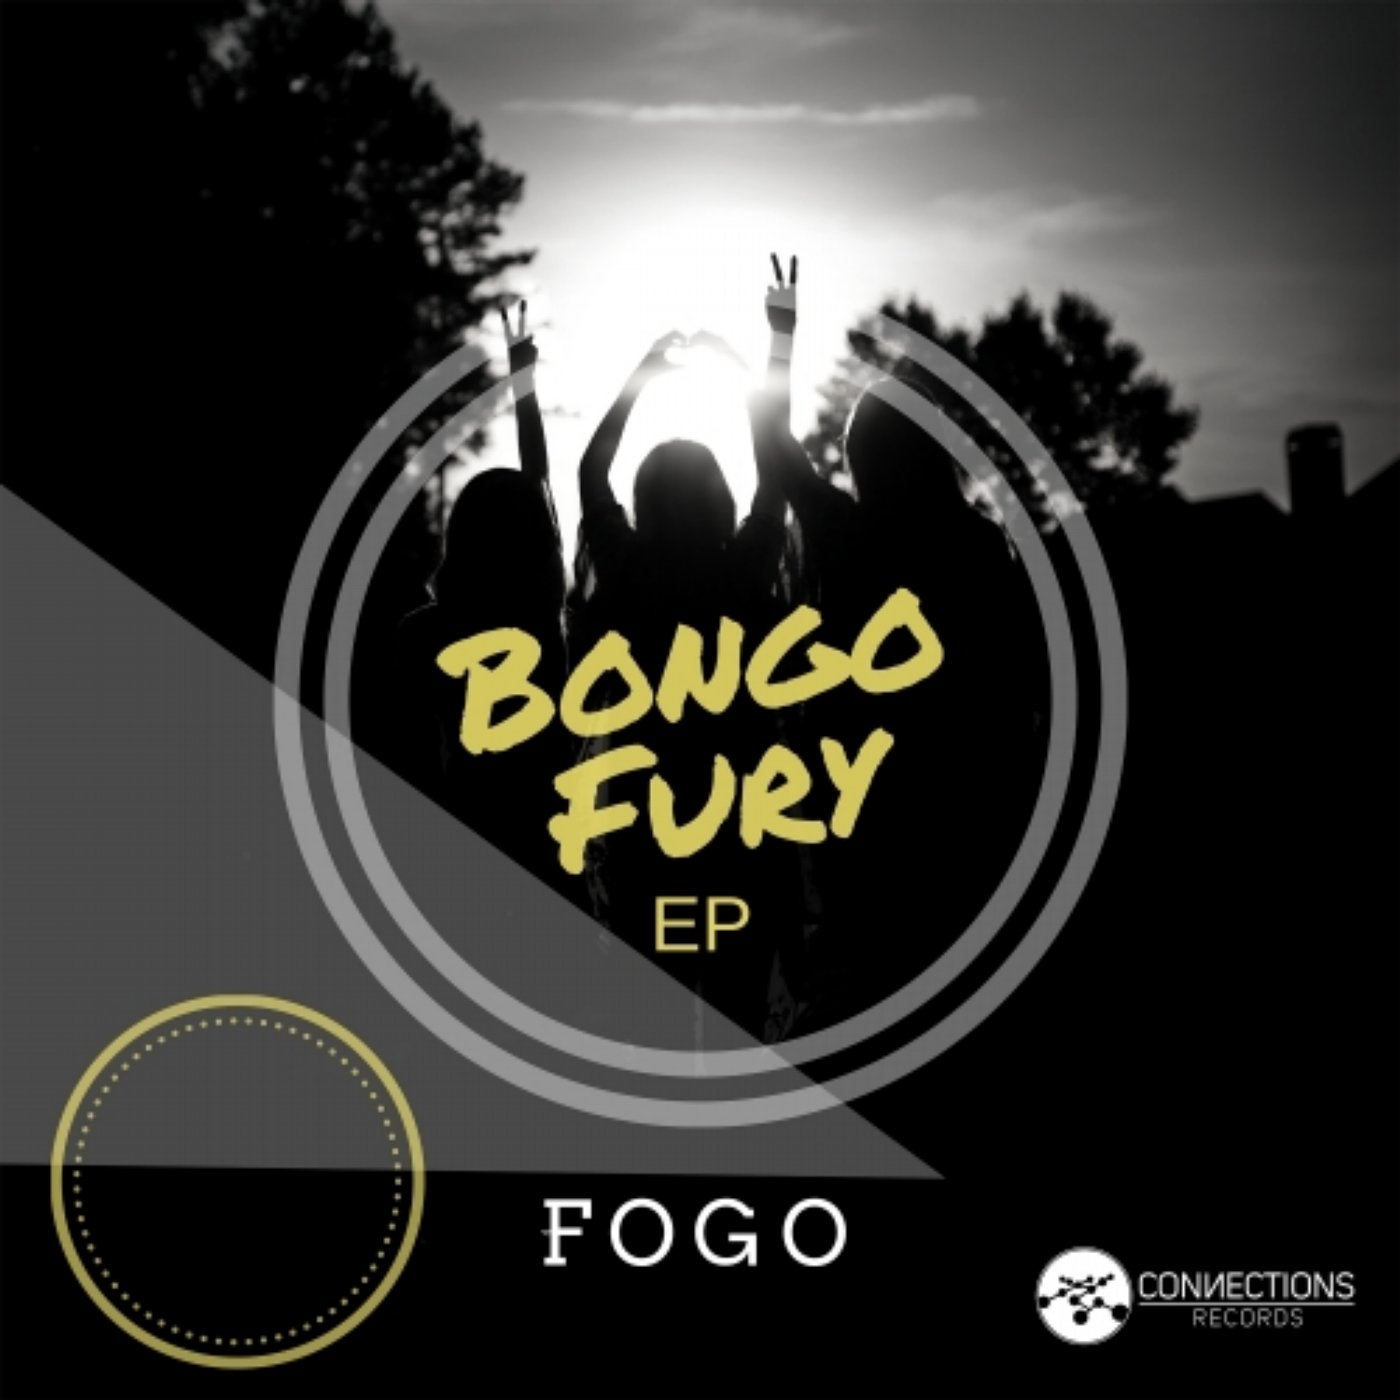 Bongo Fury EP